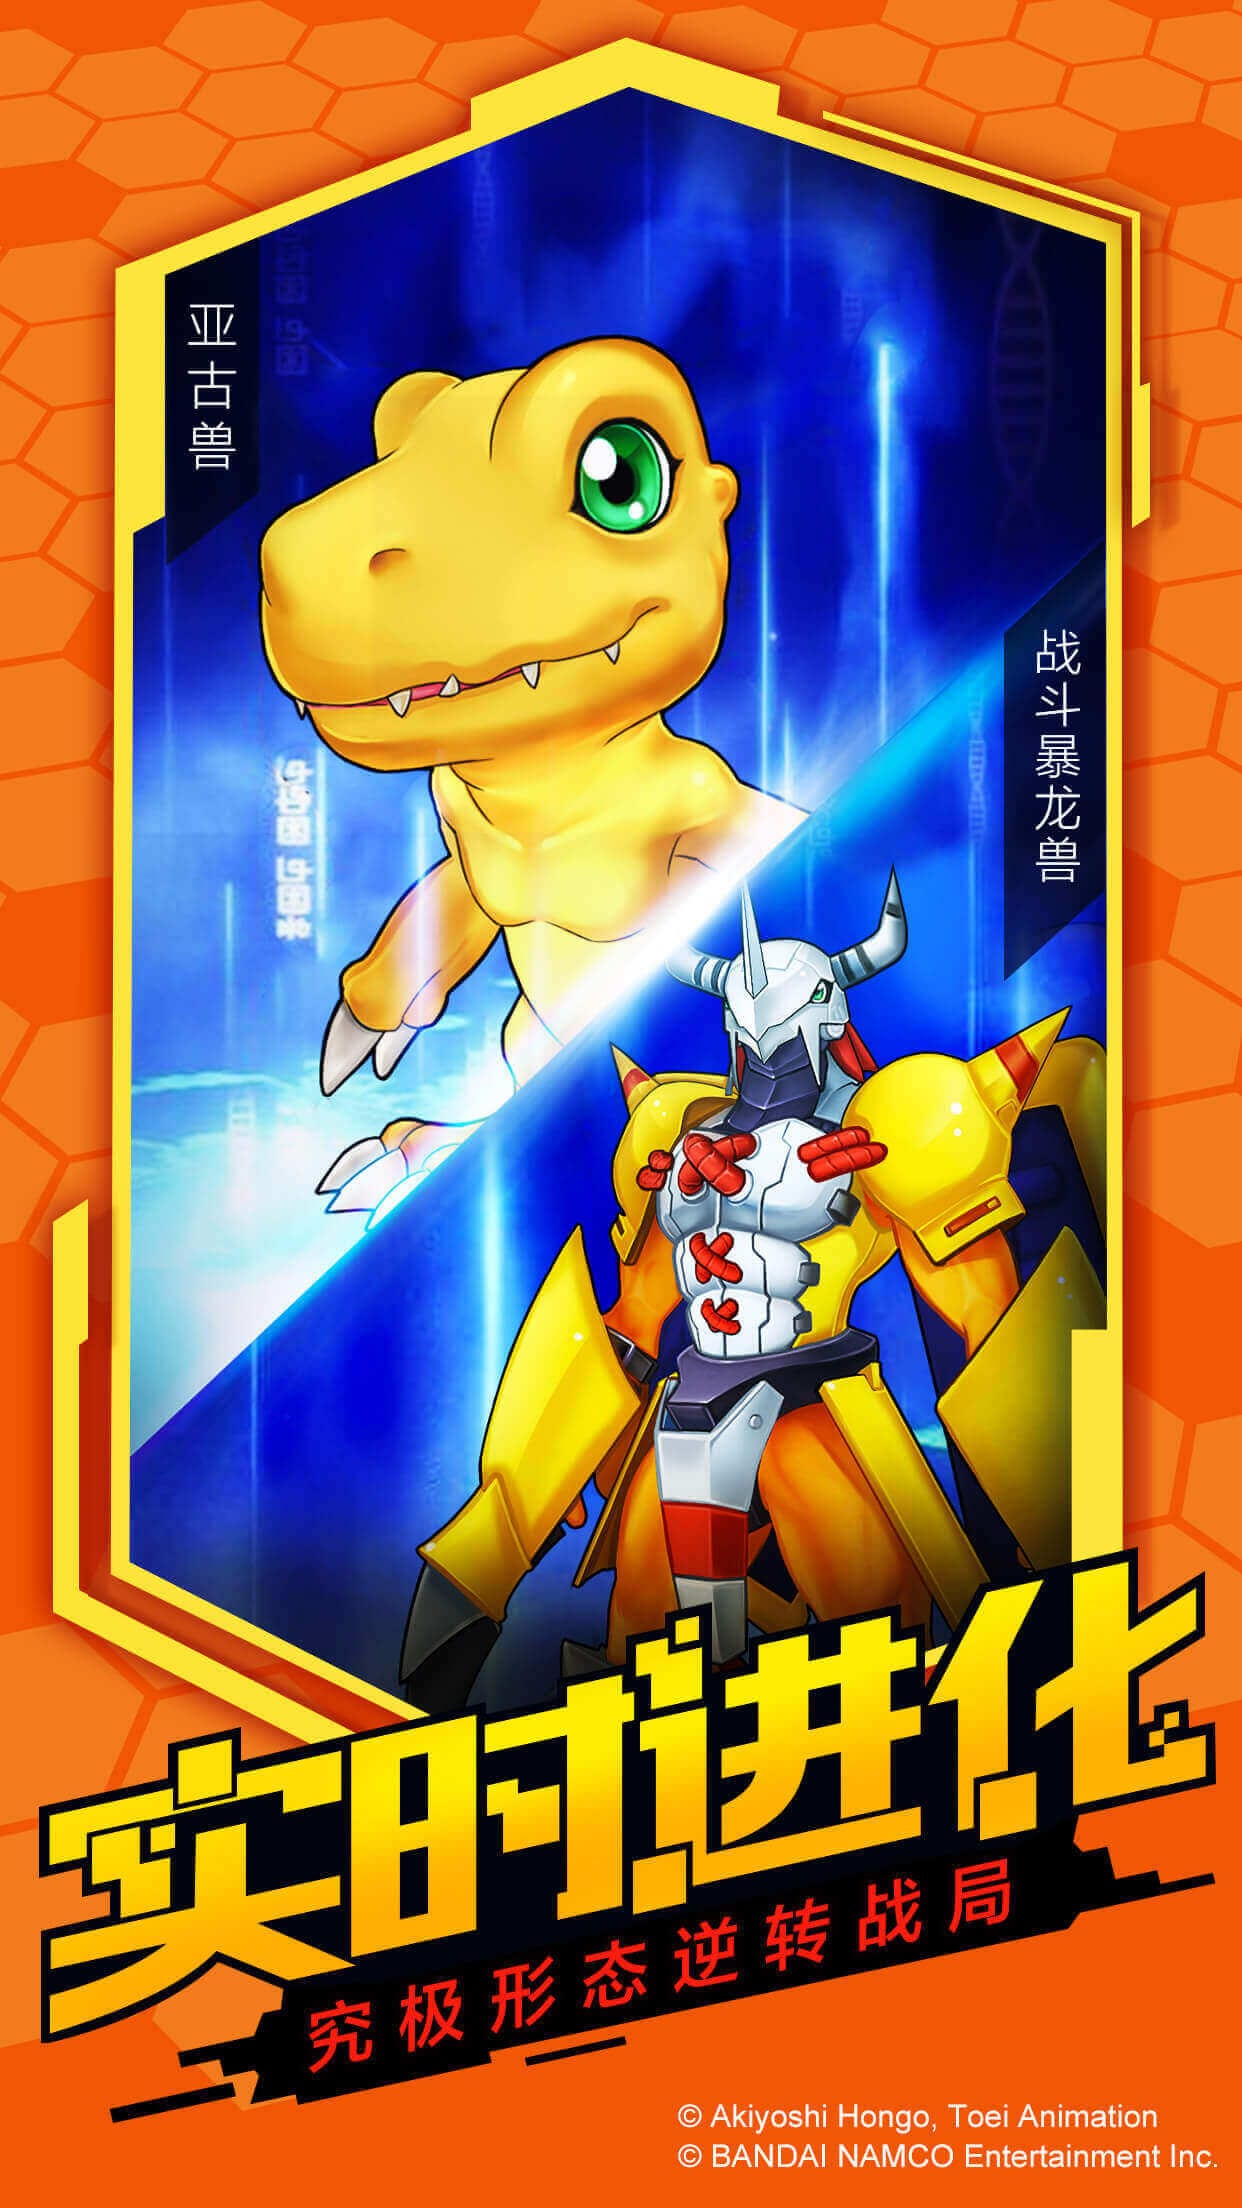 Digimon Encounter Bandai Namco announces new mobile